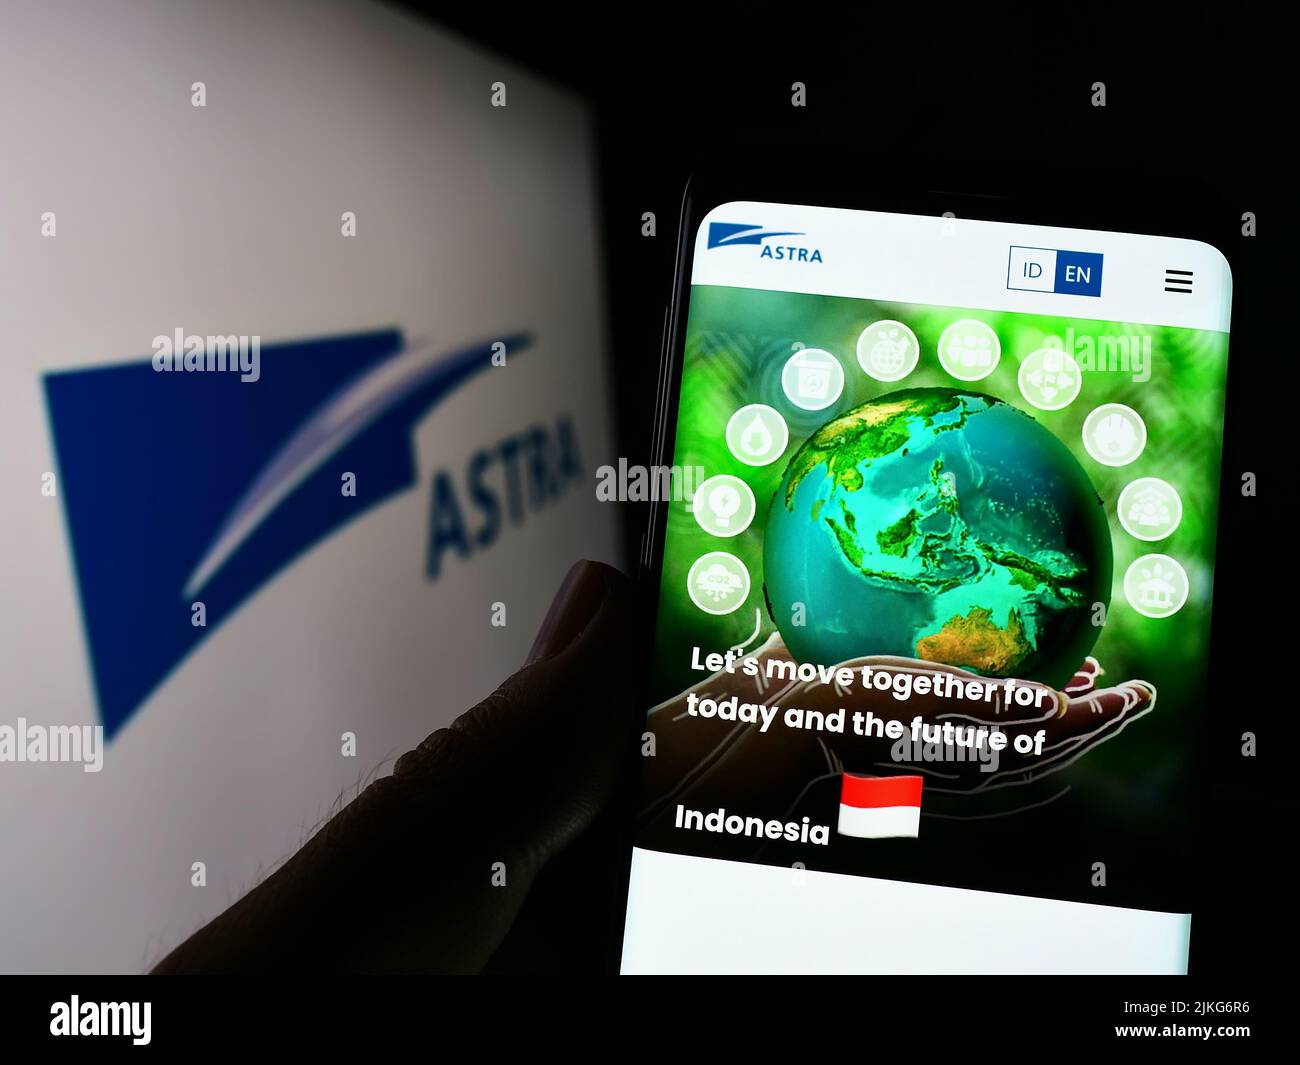 Persona che detiene il cellulare con sito web della società indonesiana PT Astra International Tbk su schermo con logo. Concentrarsi sul centro del display del telefono. Foto Stock